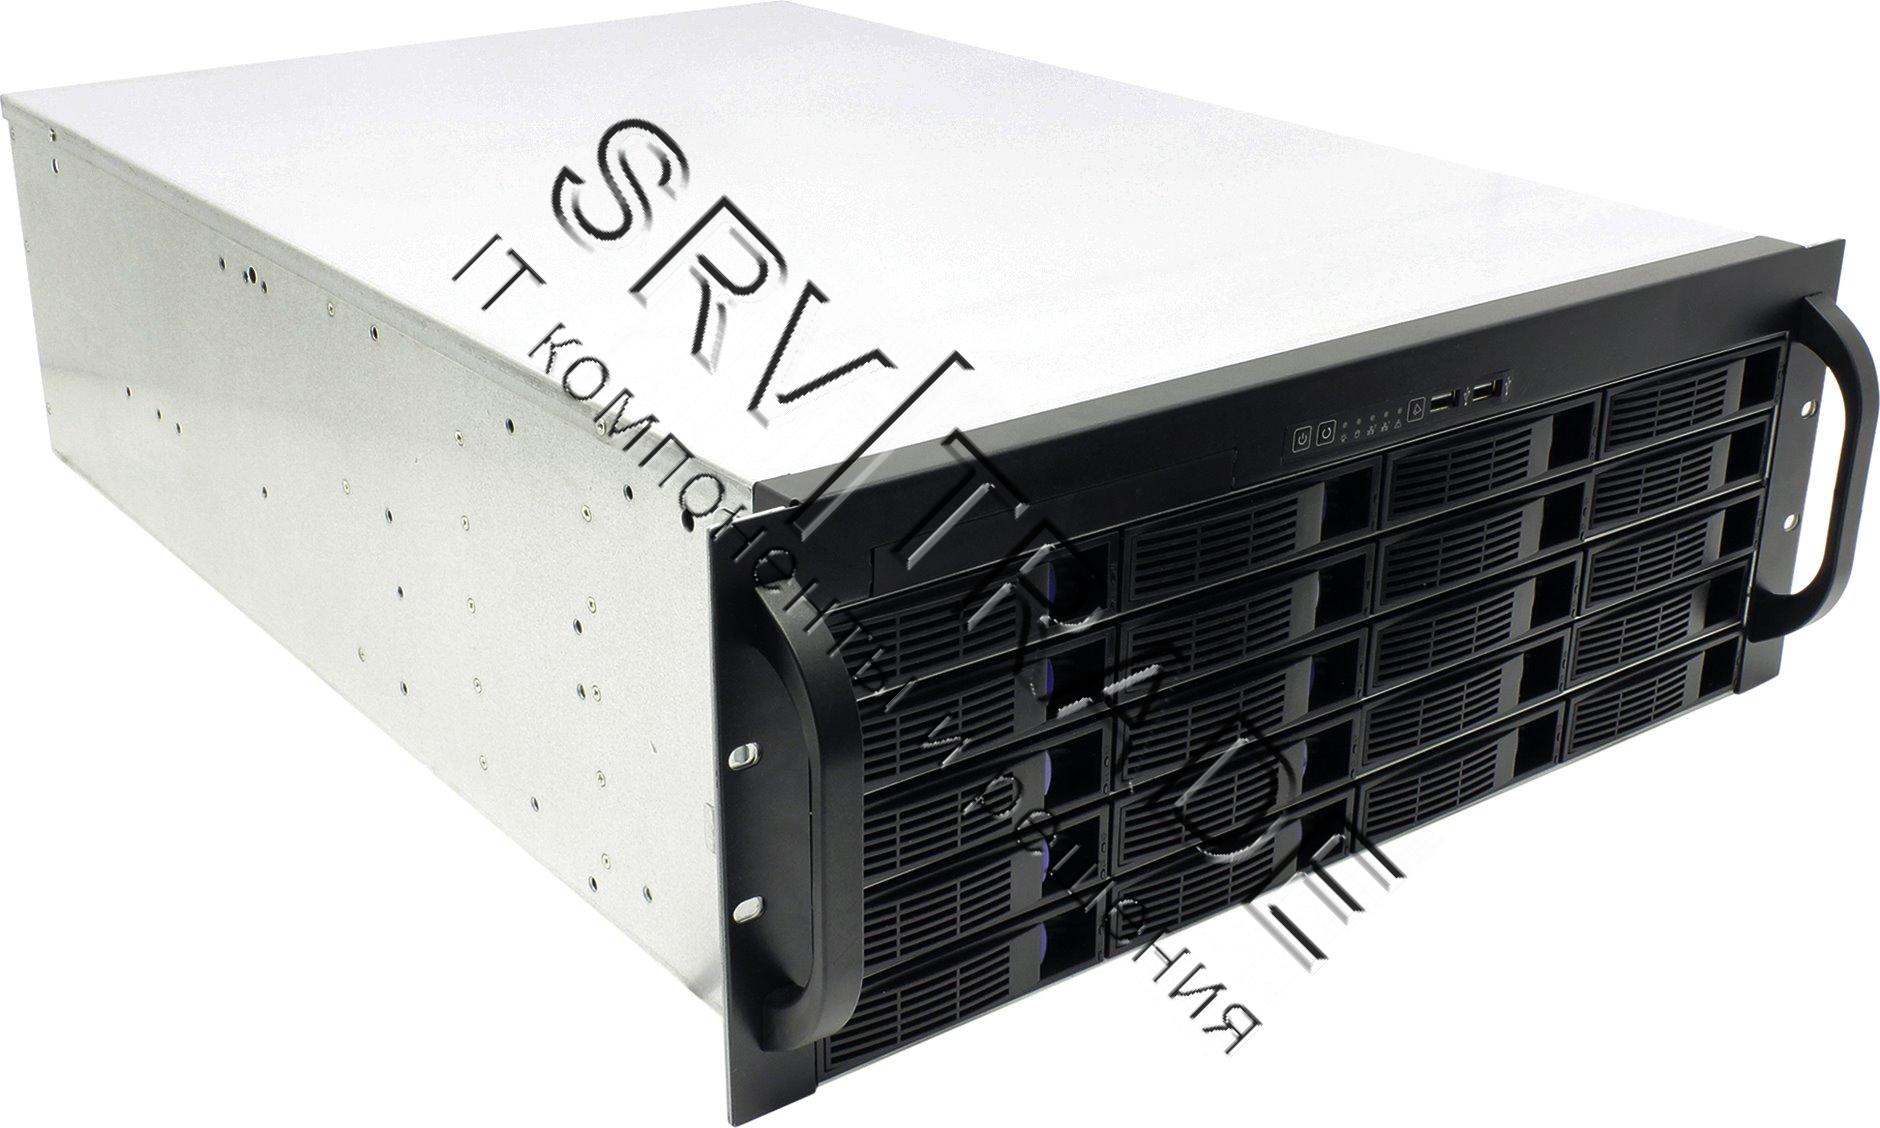 Корпус 4U Rack server case, черный, дверца, без блока питания, глубина 430мм, MB 12"x9.6"